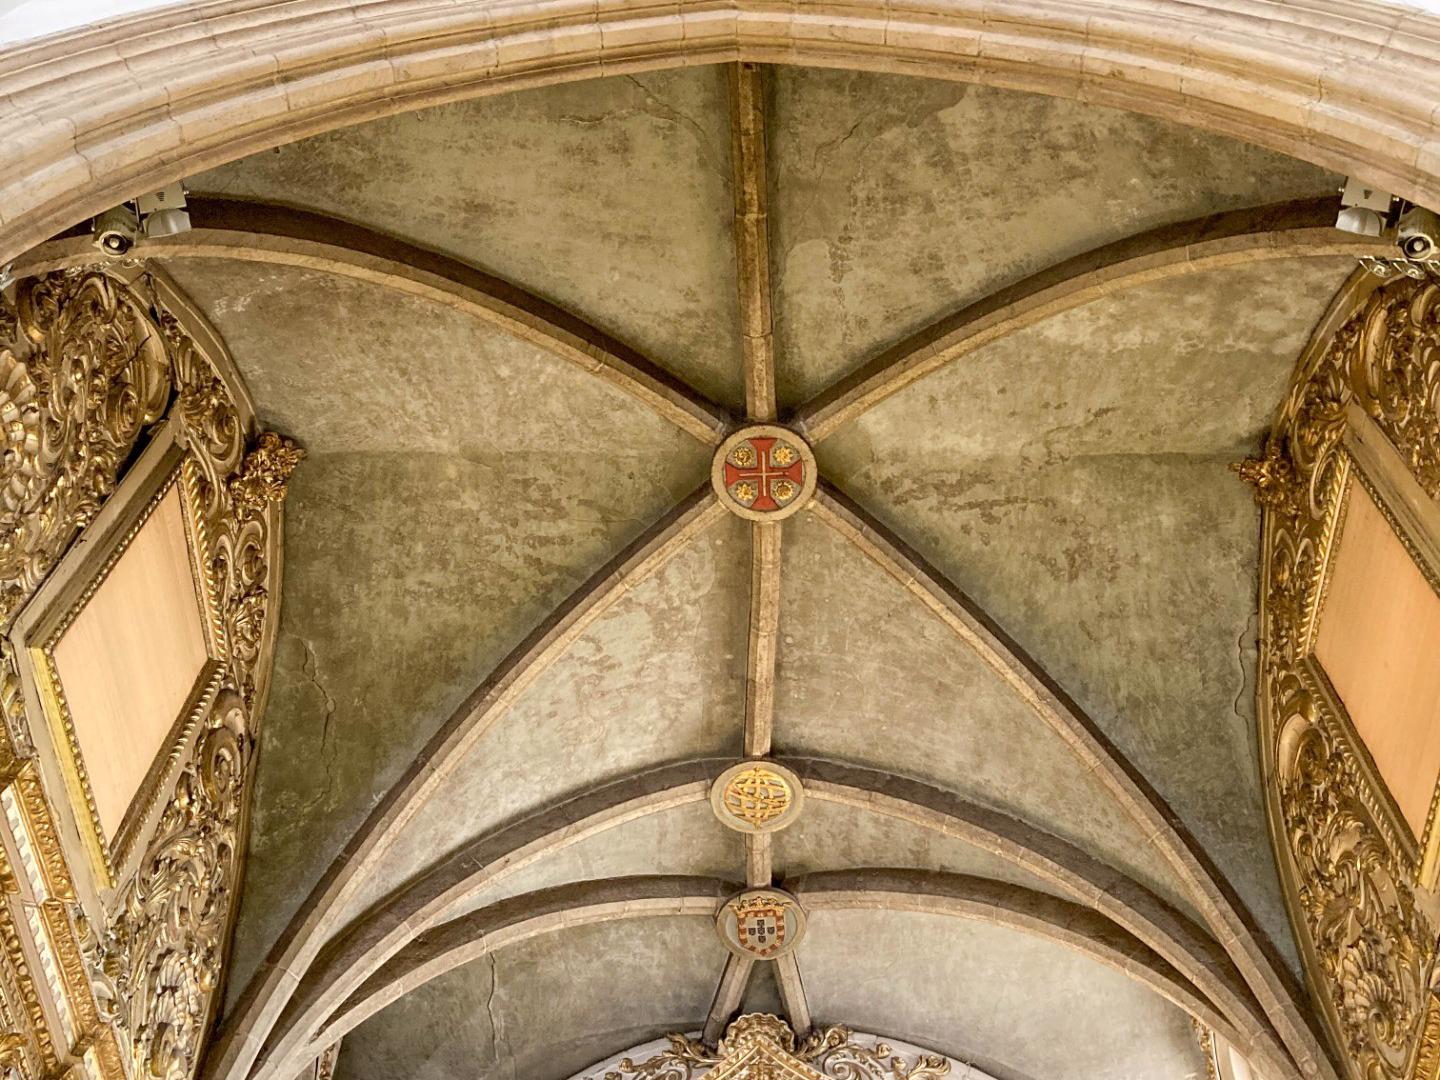 Arquitetura - A Igreja apresenta uma planta retangular, estruturada em três naves e com uma torre sineira com um relógio do século XVI. Os seus portais são luxuosamente decorados ao estilo manuelino.